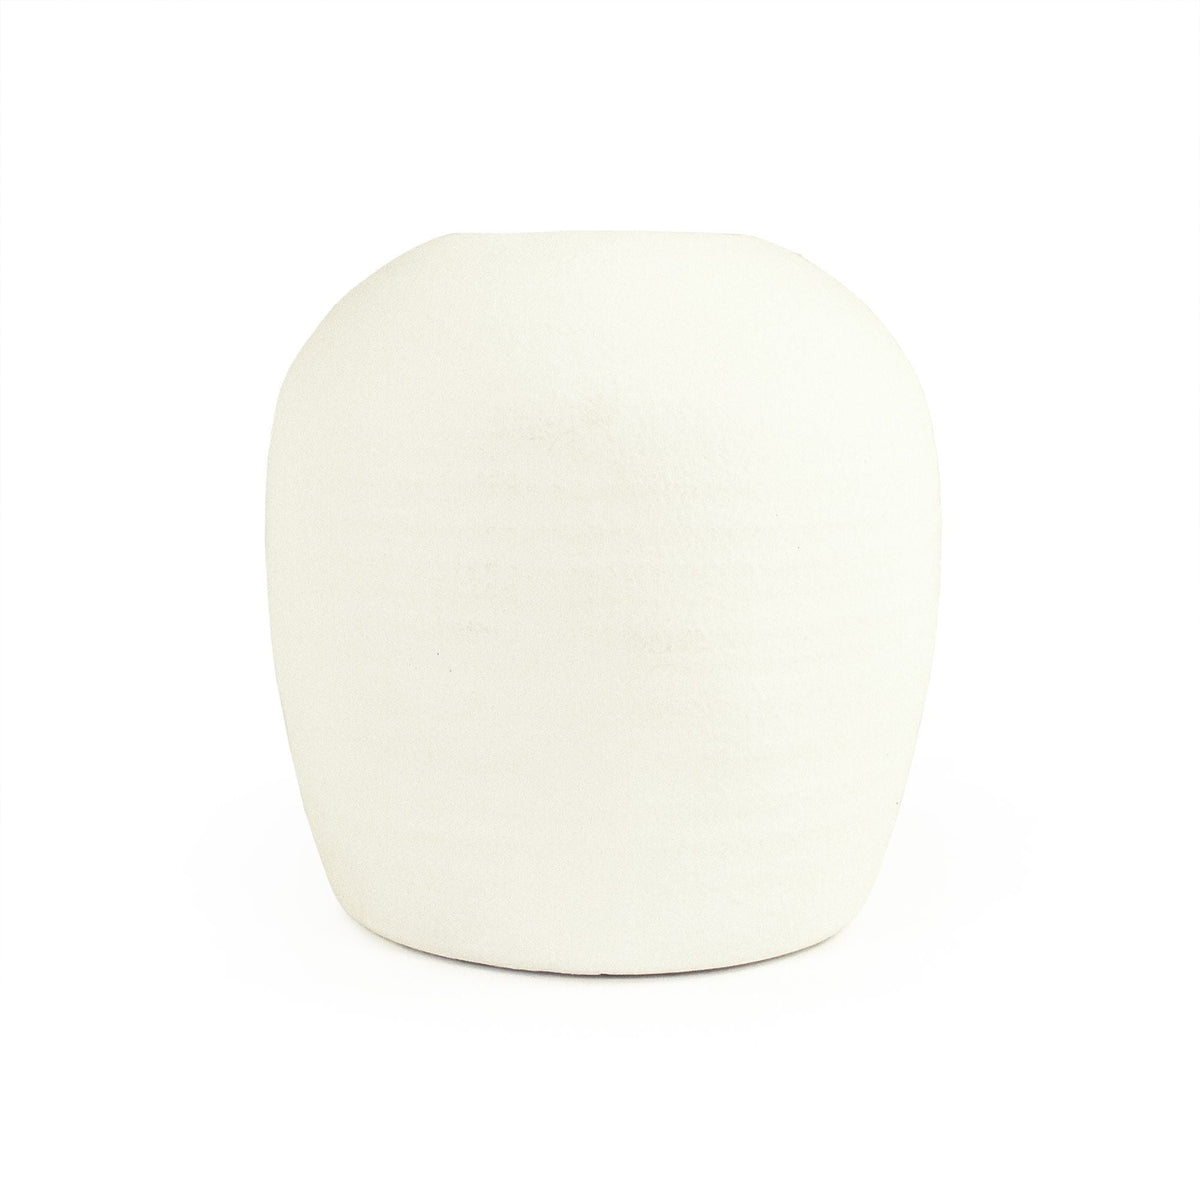 Matte White Vase (14665S A584A) by Zentique